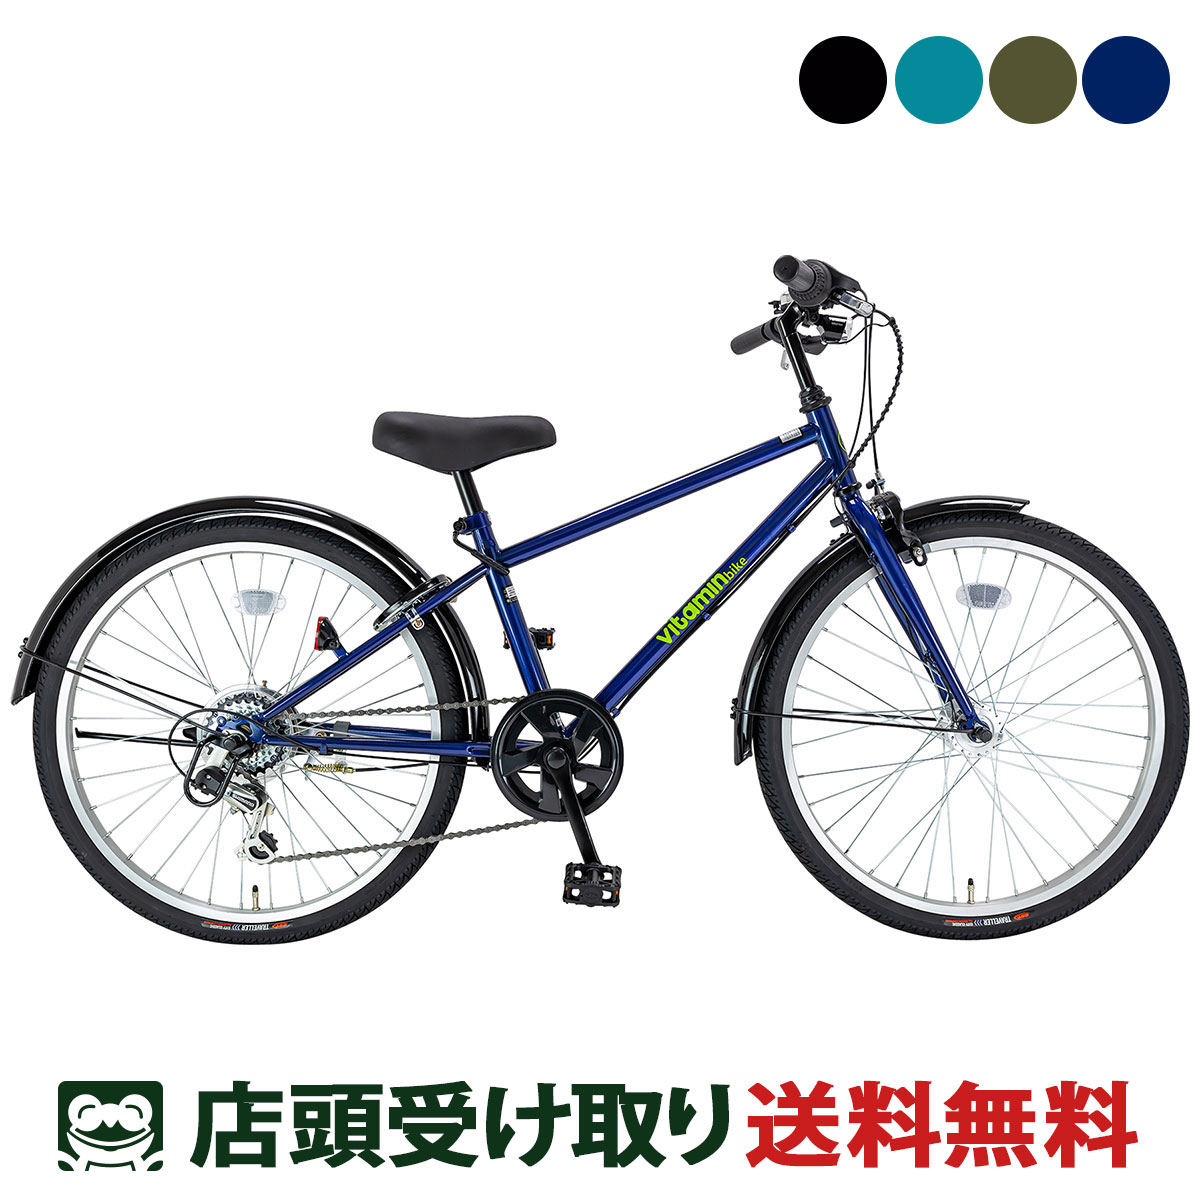 【楽天市場】スーパーセール限定価格 サイクルスポット vitamin bike 